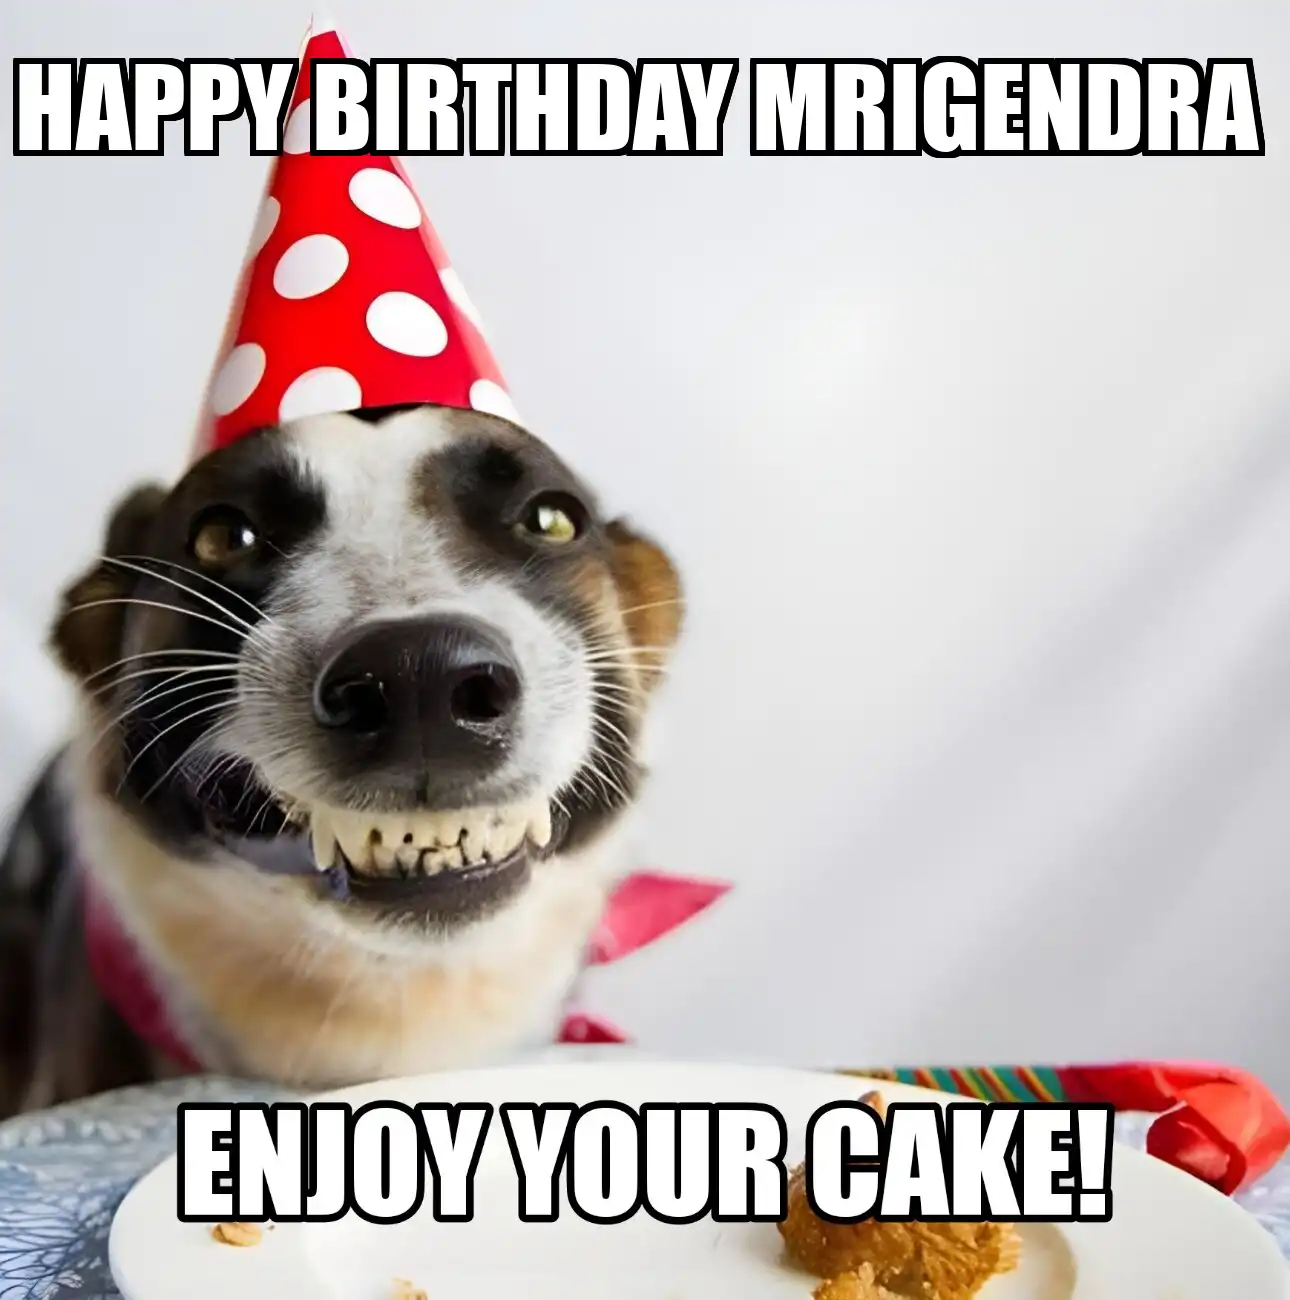 Happy Birthday Mrigendra Enjoy Your Cake Dog Meme